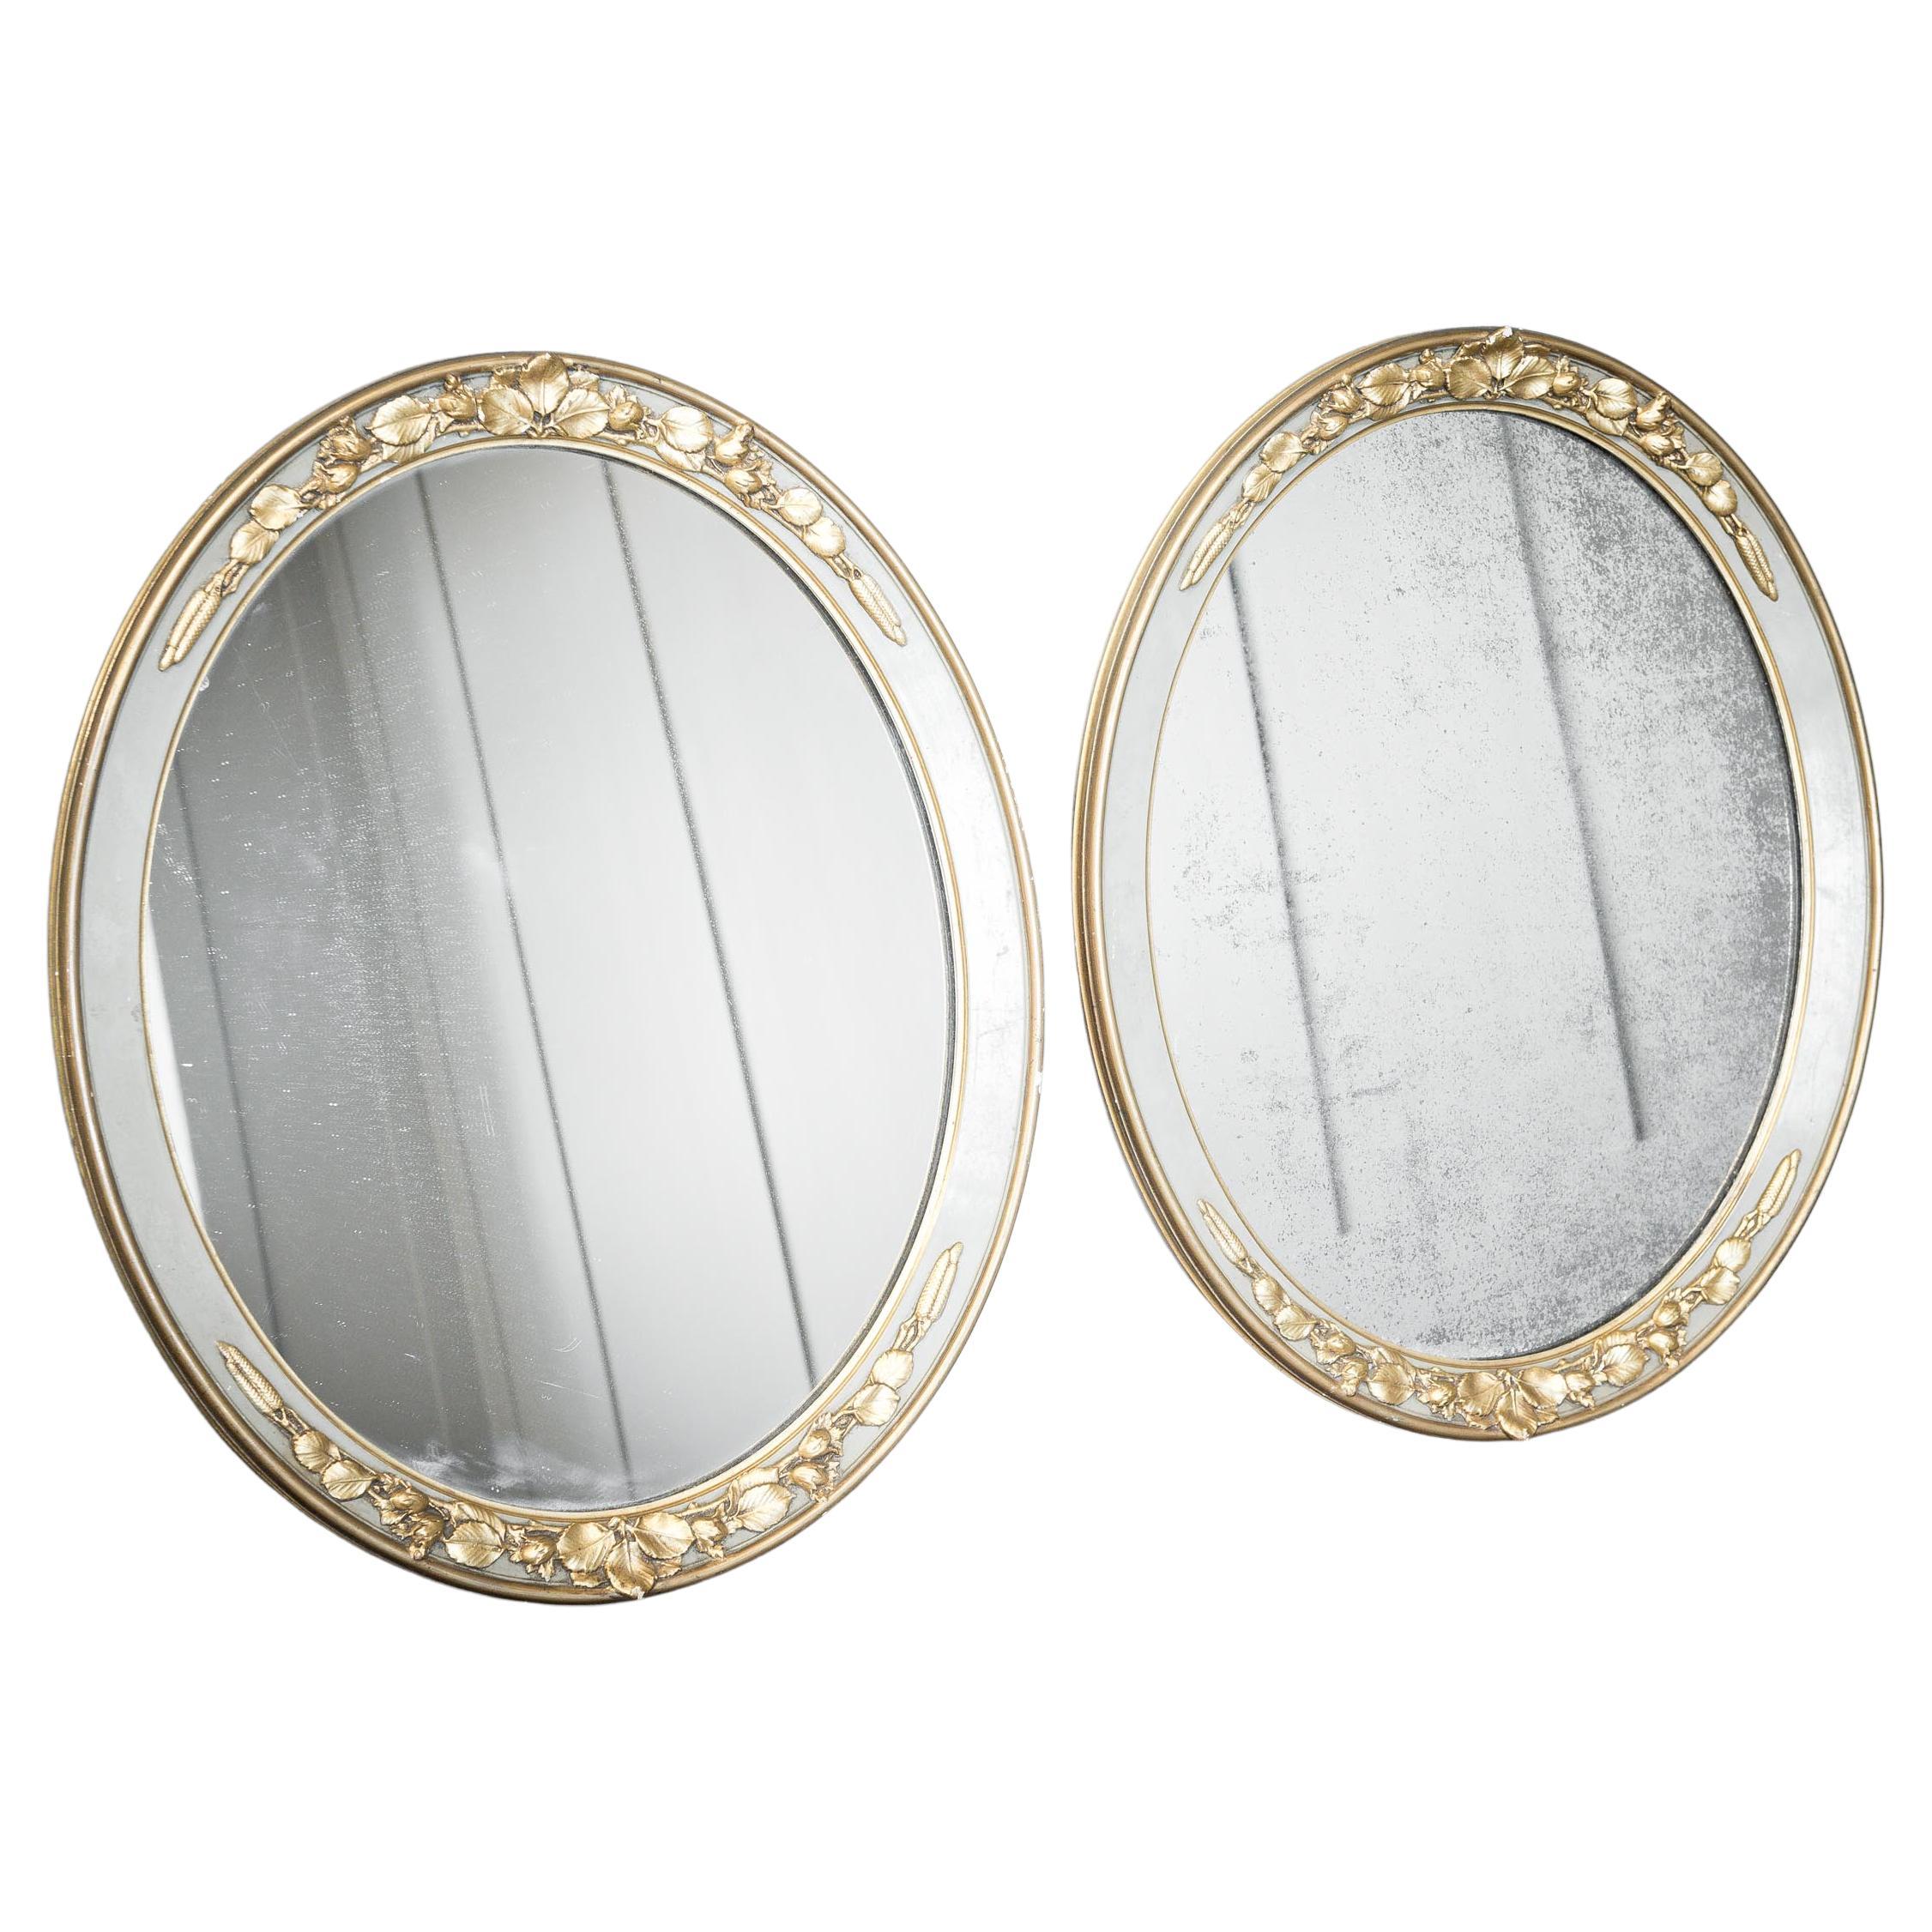 2 miroirs ovales décorés de plâtre